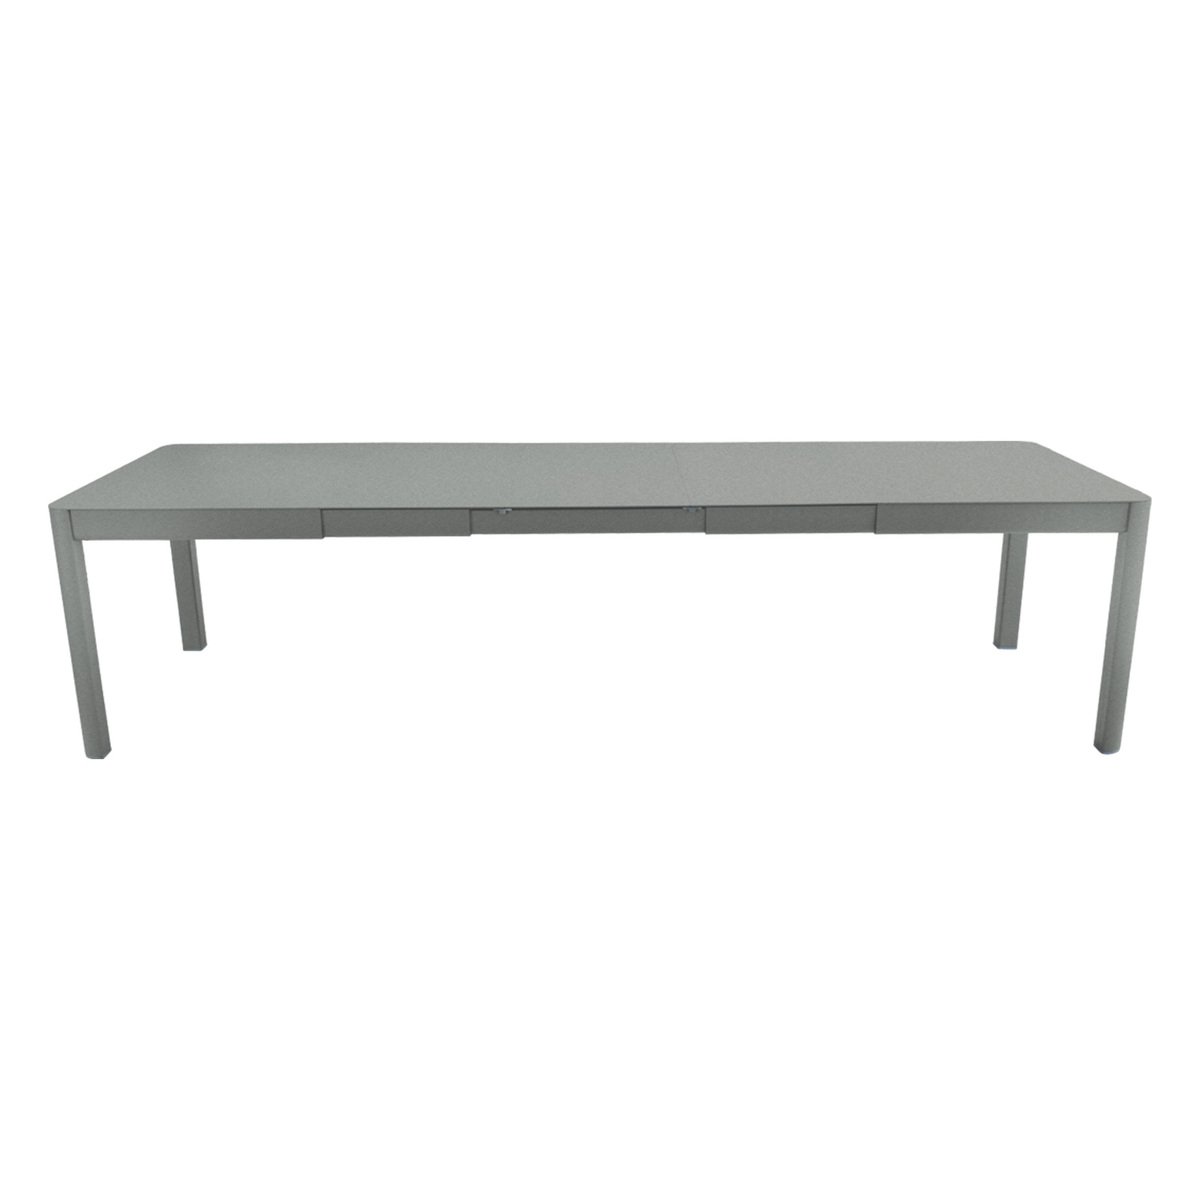 Fermob Ribambelle jatkettava pöytä, XL, lapilli grey